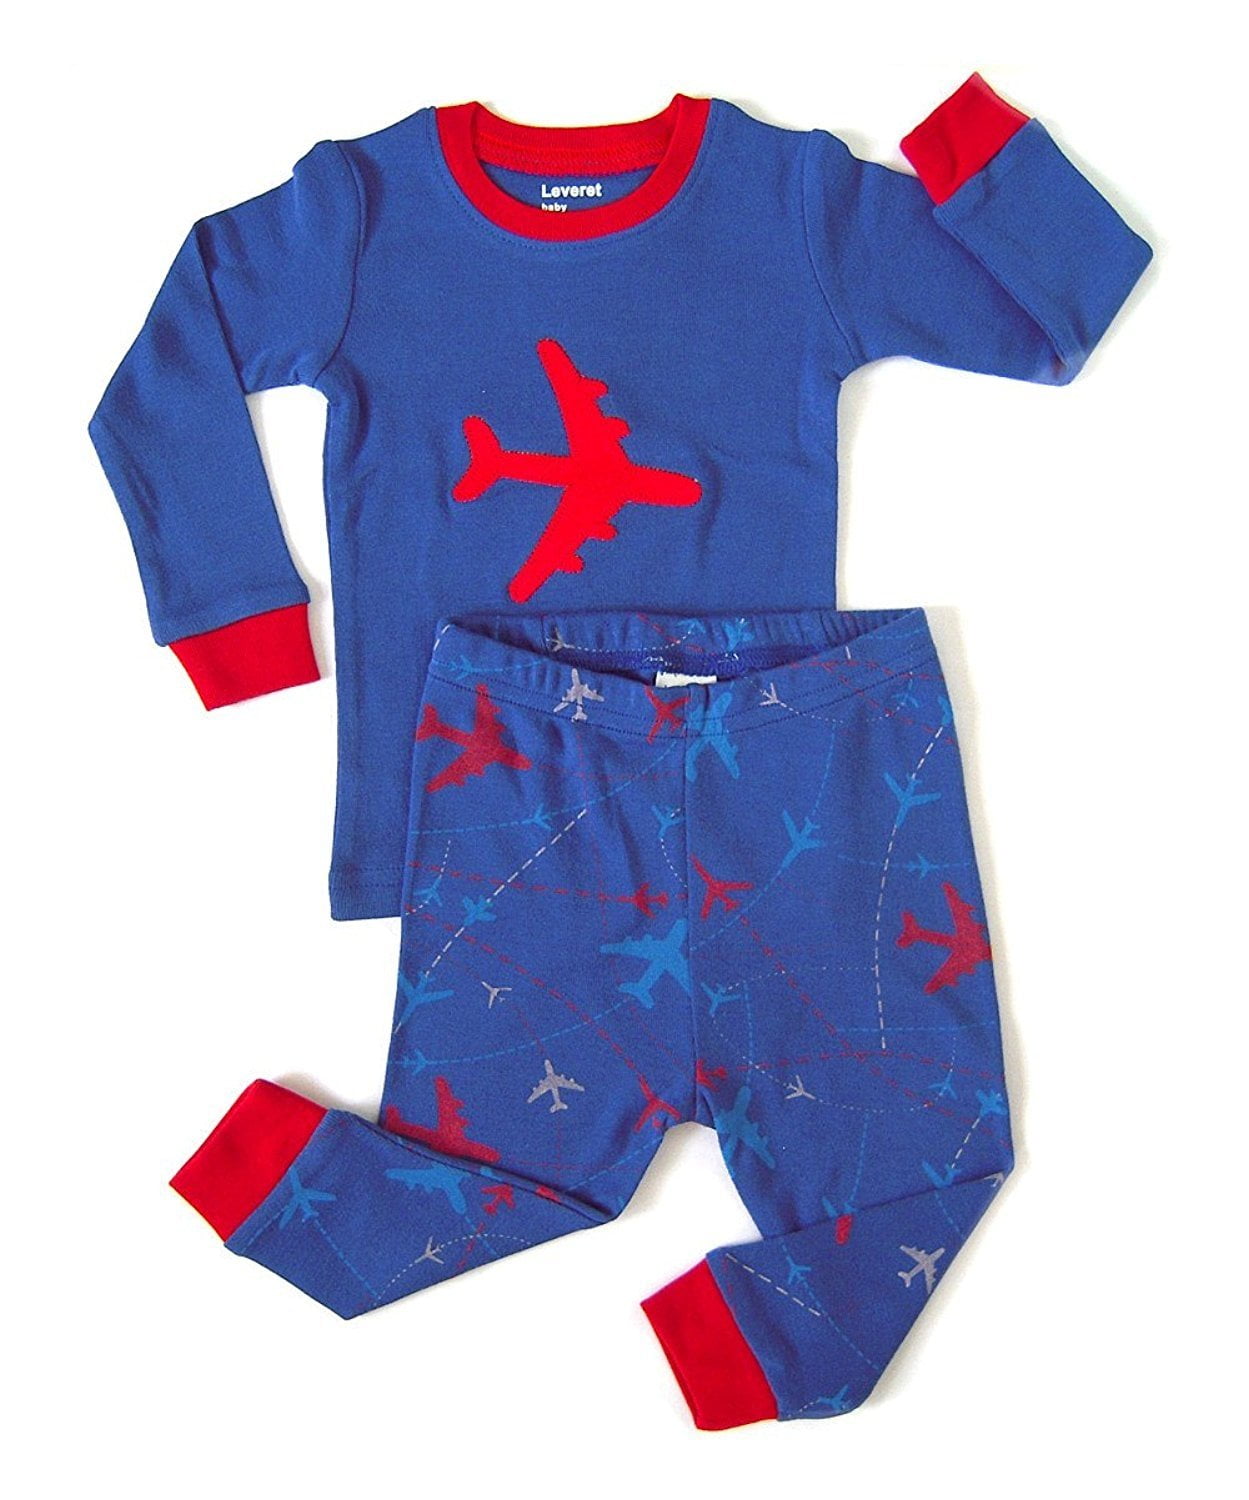 Size 12M-14Y Leveret Boys Train Pajama Set 100% Cotton 